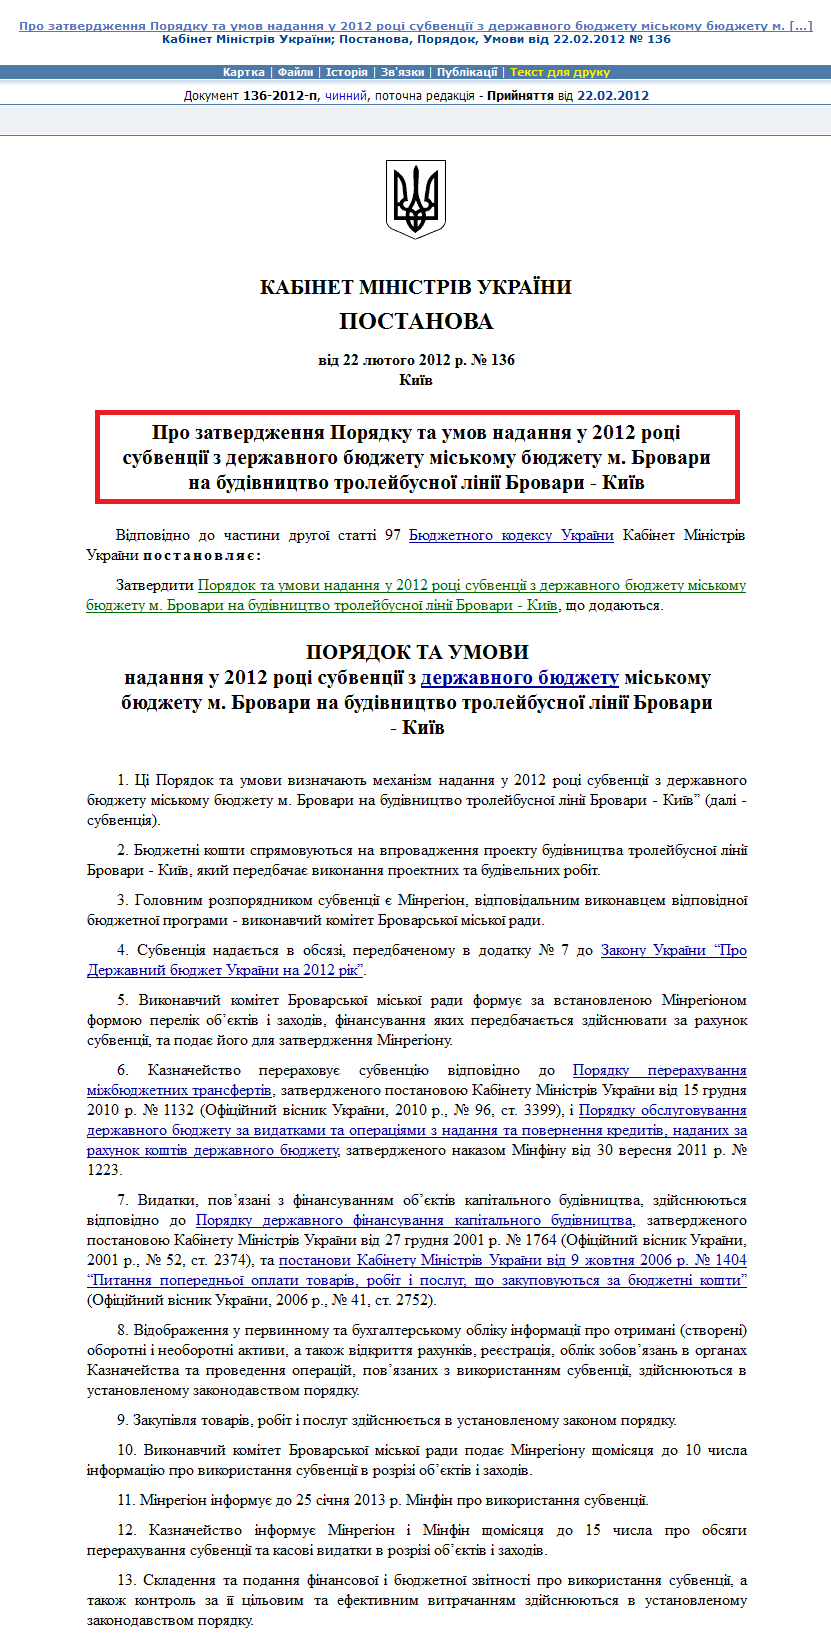 http://zakon2.rada.gov.ua/laws/show/136-2012-%D0%BF